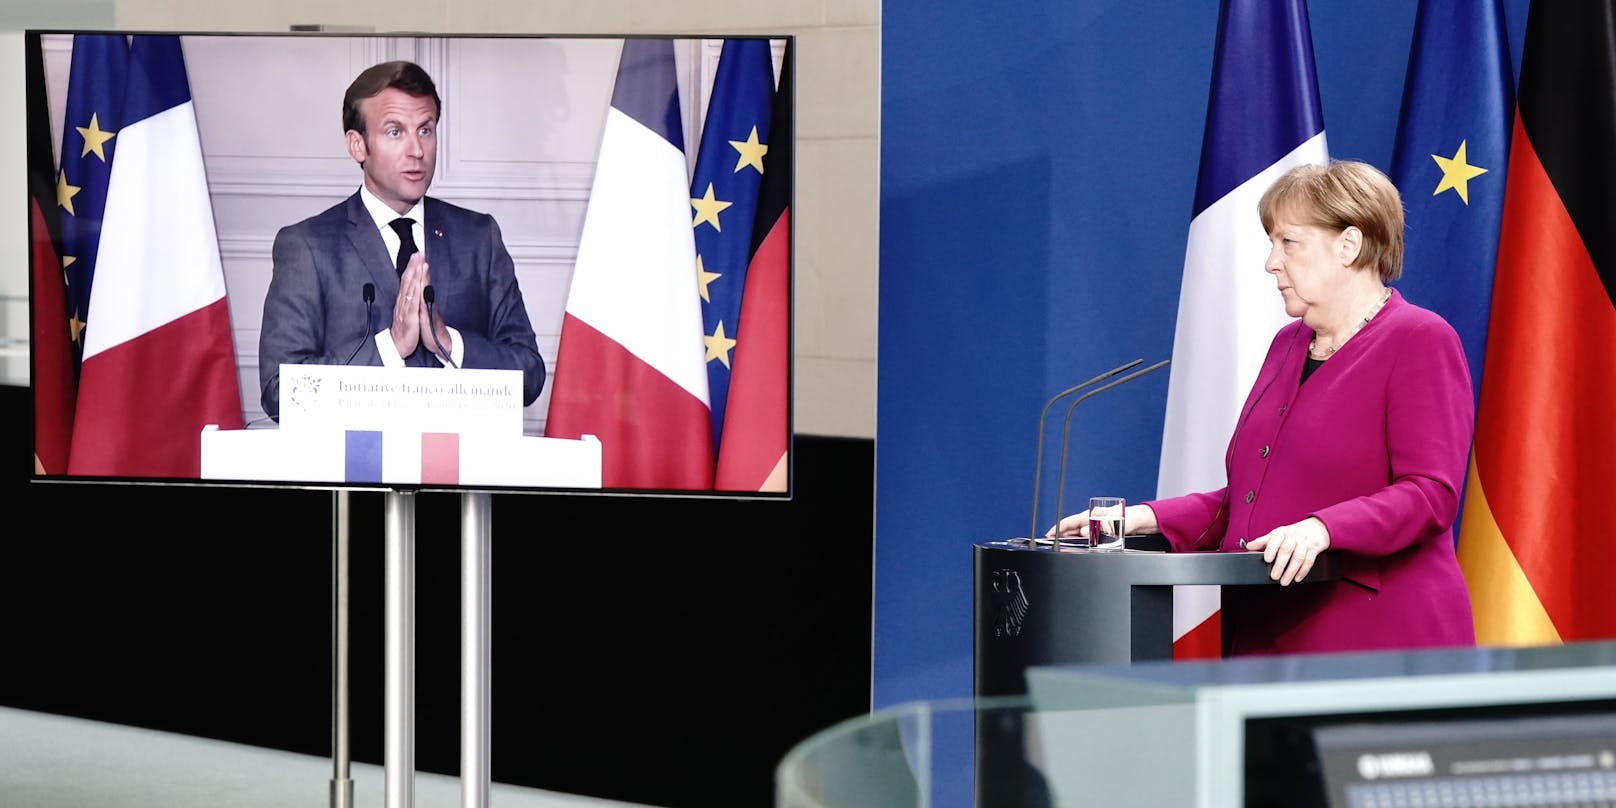 Deutschland und Frankreich schlagen gemeinsam ein europäisches Programm im Umfang von 500 Milliarden Euro zur wirtschaftlichen Erholung nach der Corona-Krise vor.